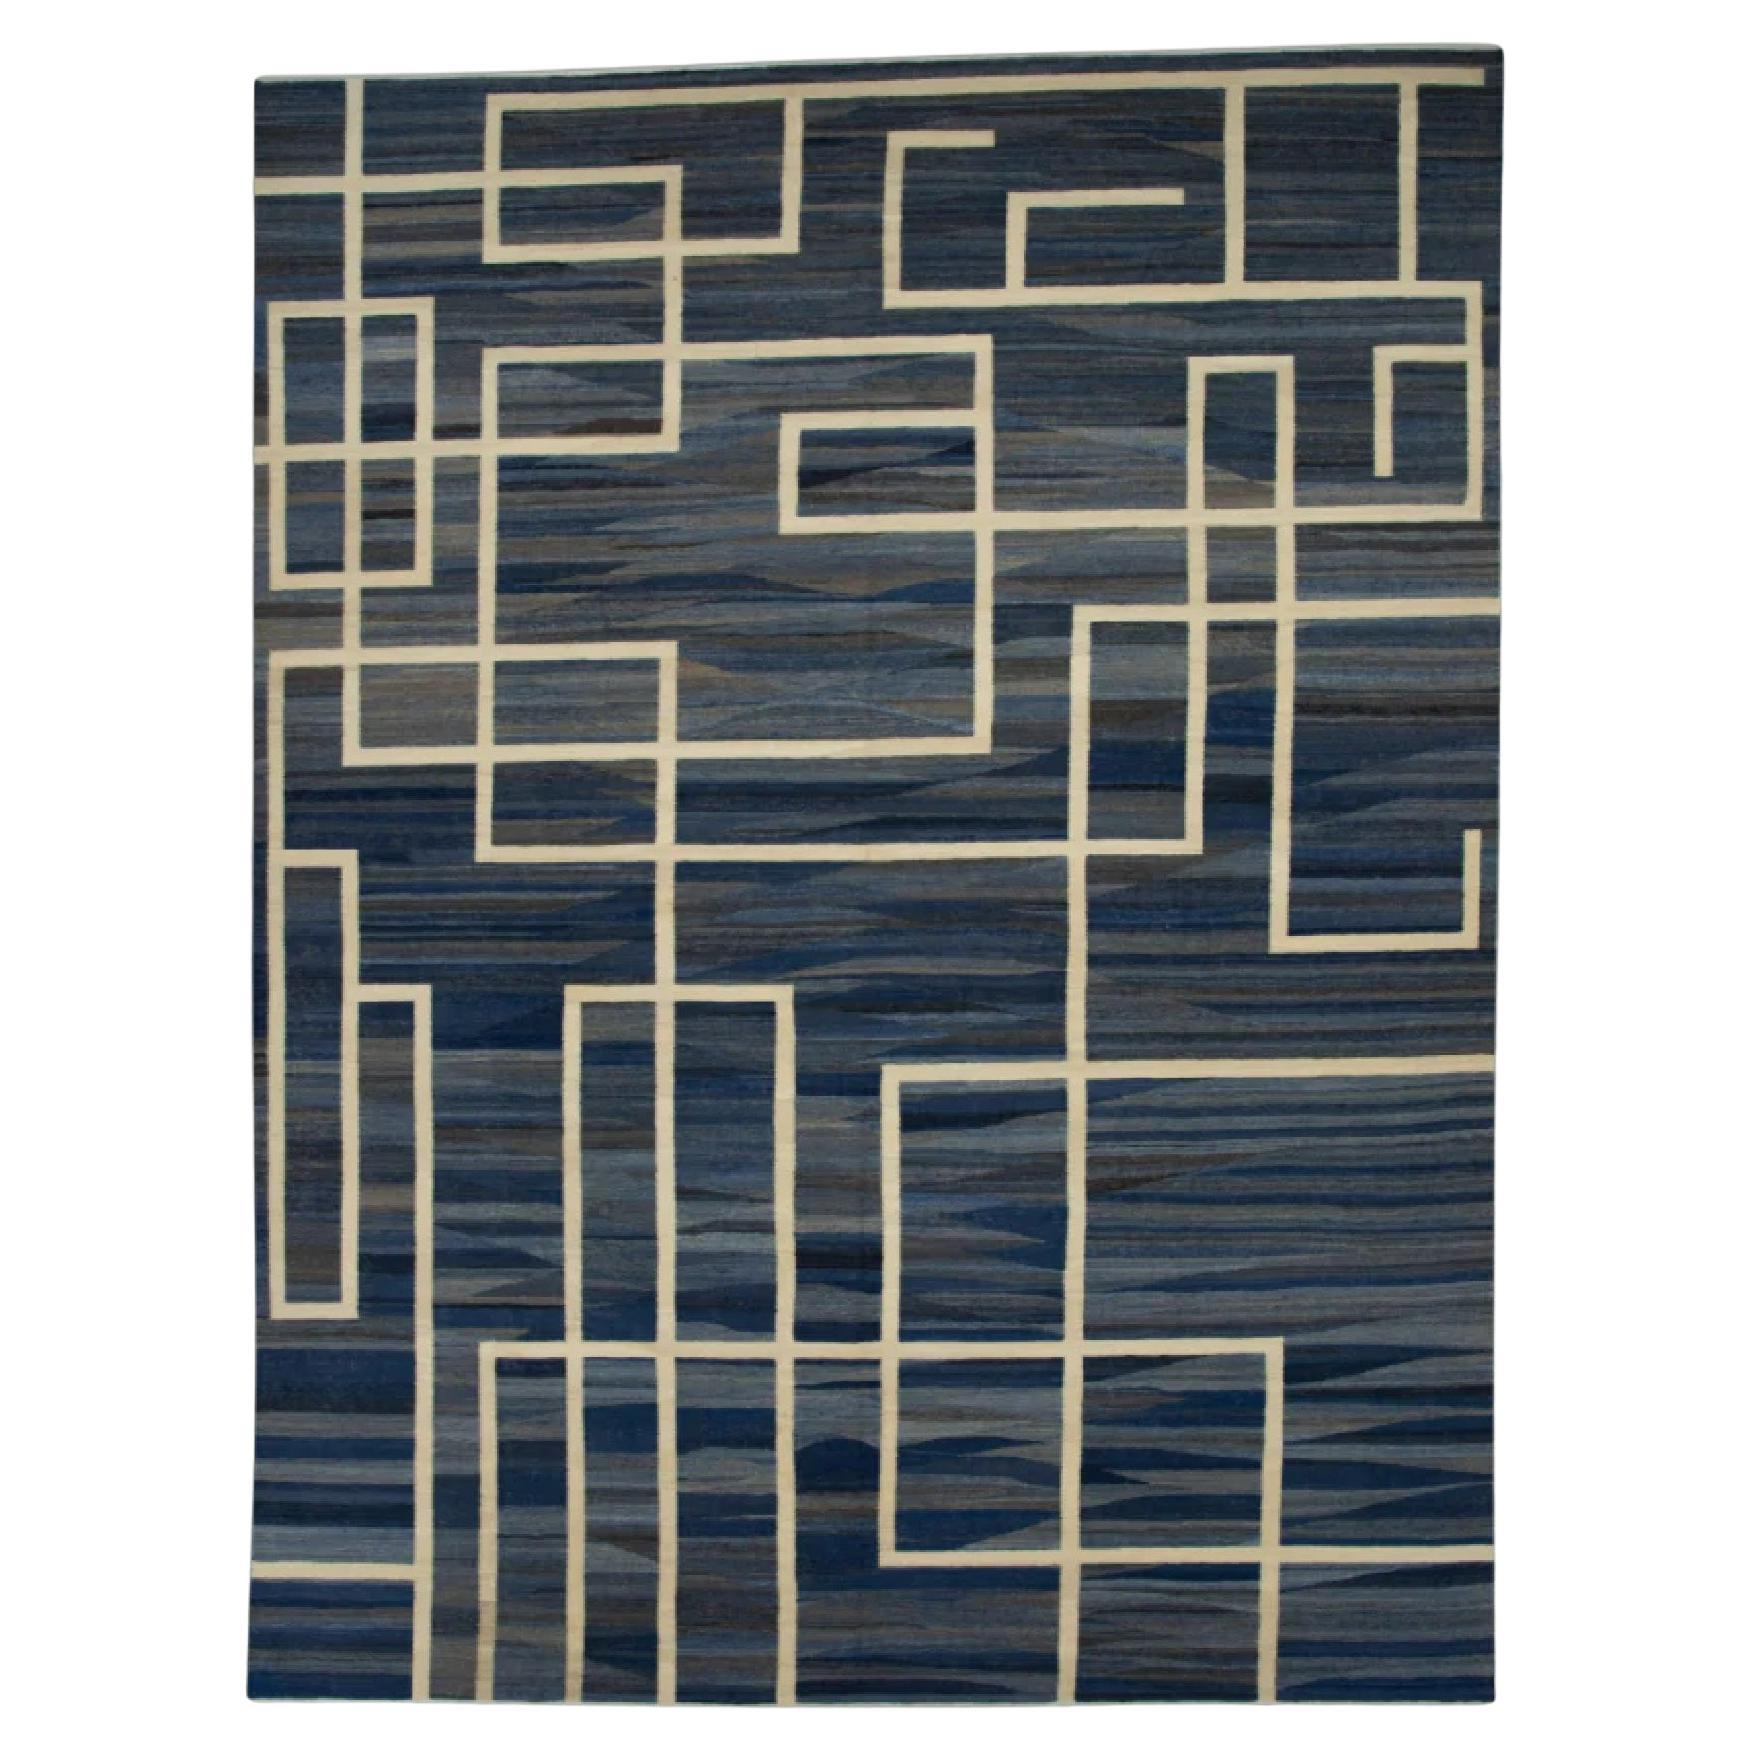 Tapis en laine bleu marine à tissage plat fait à la main avec motif géométrique blanc 11'11" X 15'9".